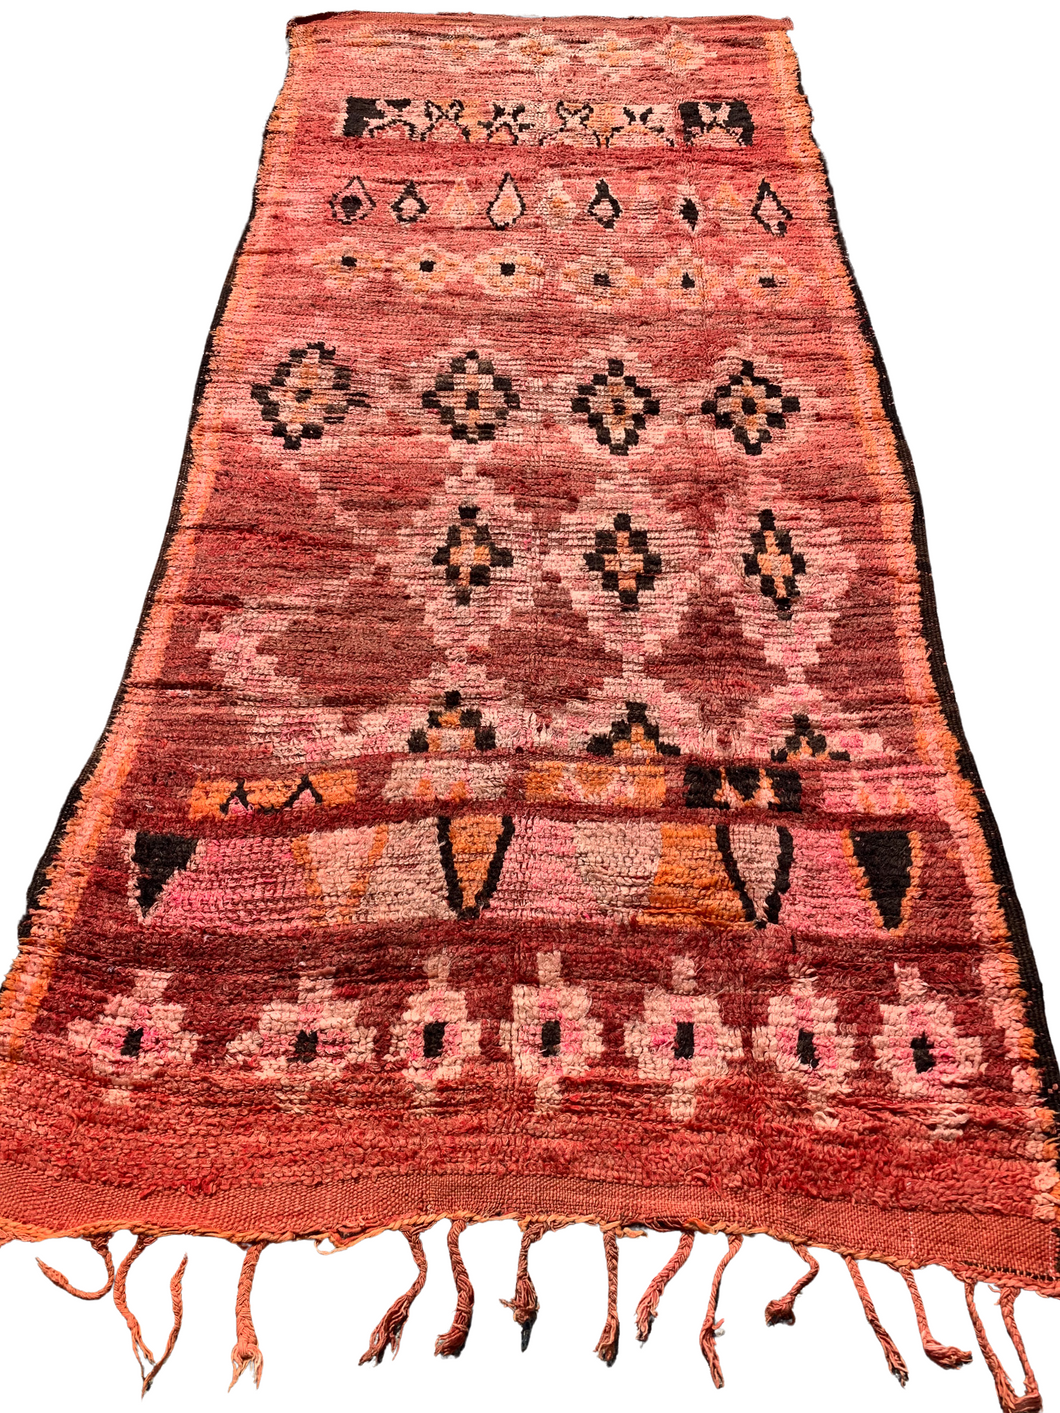 No. A1082 - 4.3' x 9.7' Vintage Moroccan Bejaad Area Rug